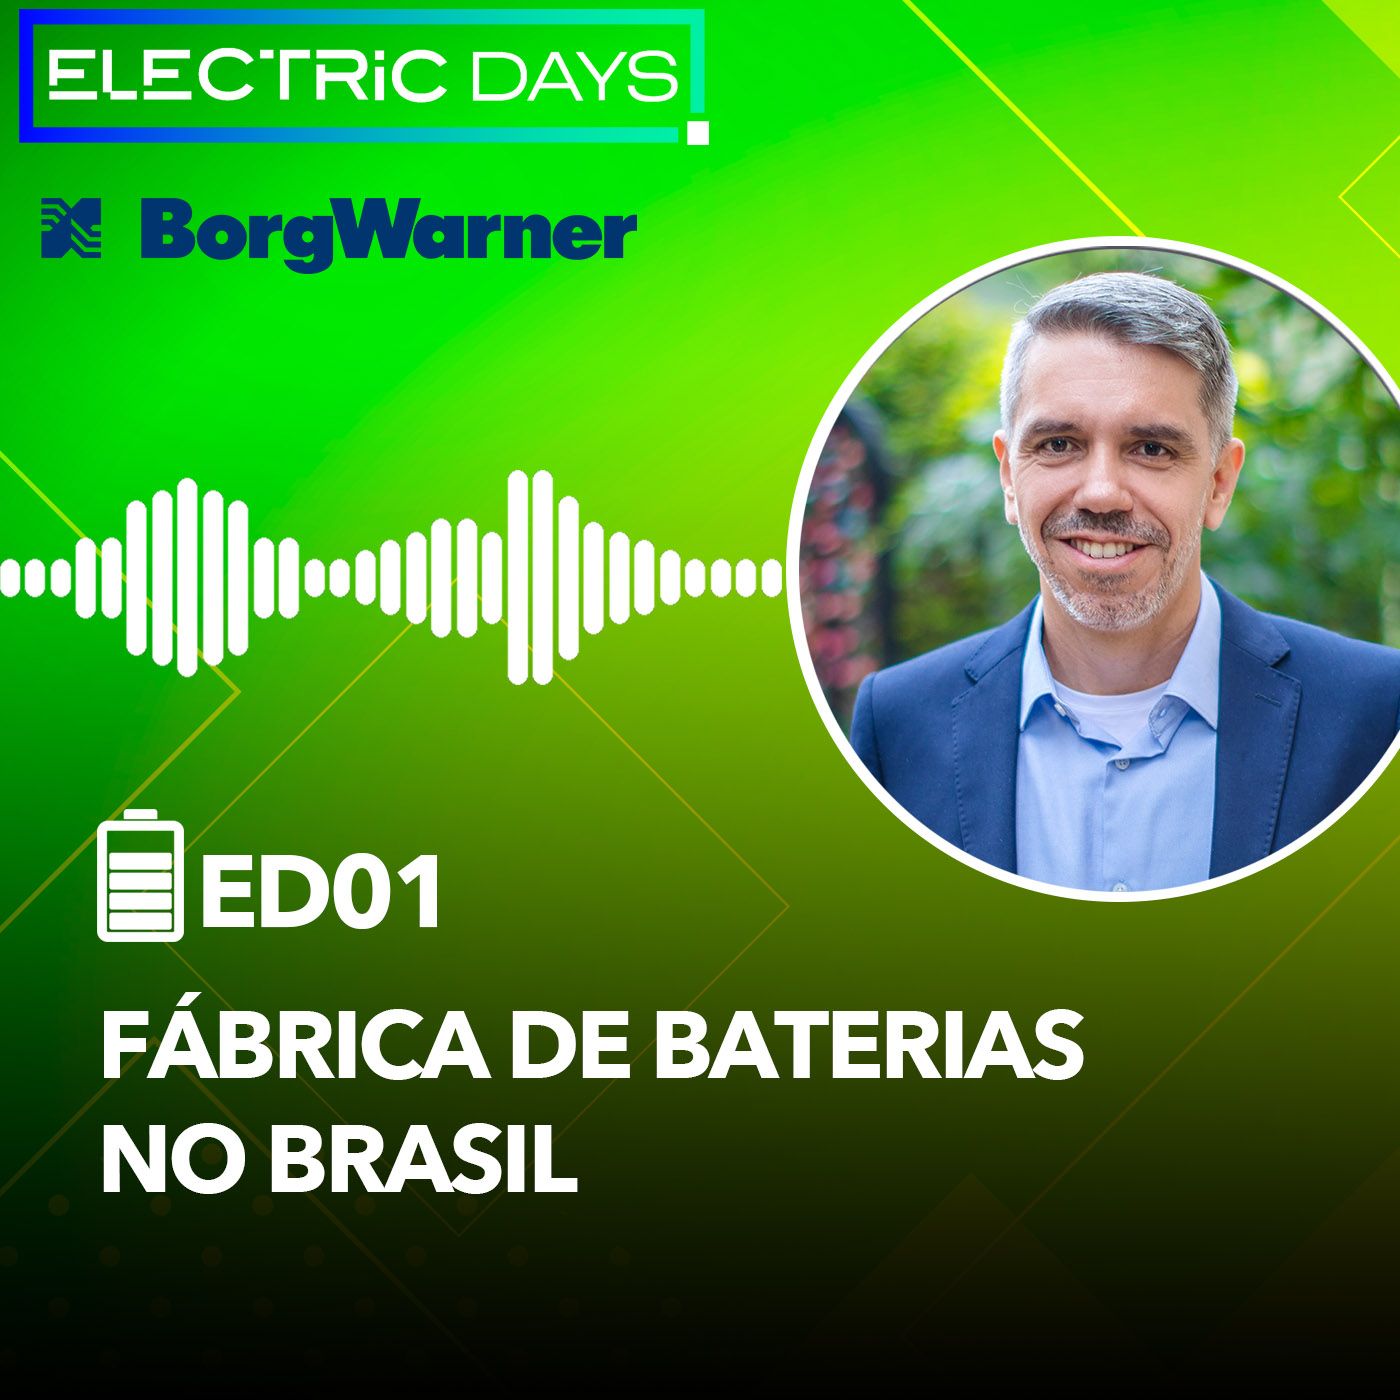 Fábrica de Baterias no Brasil - BorgWarner